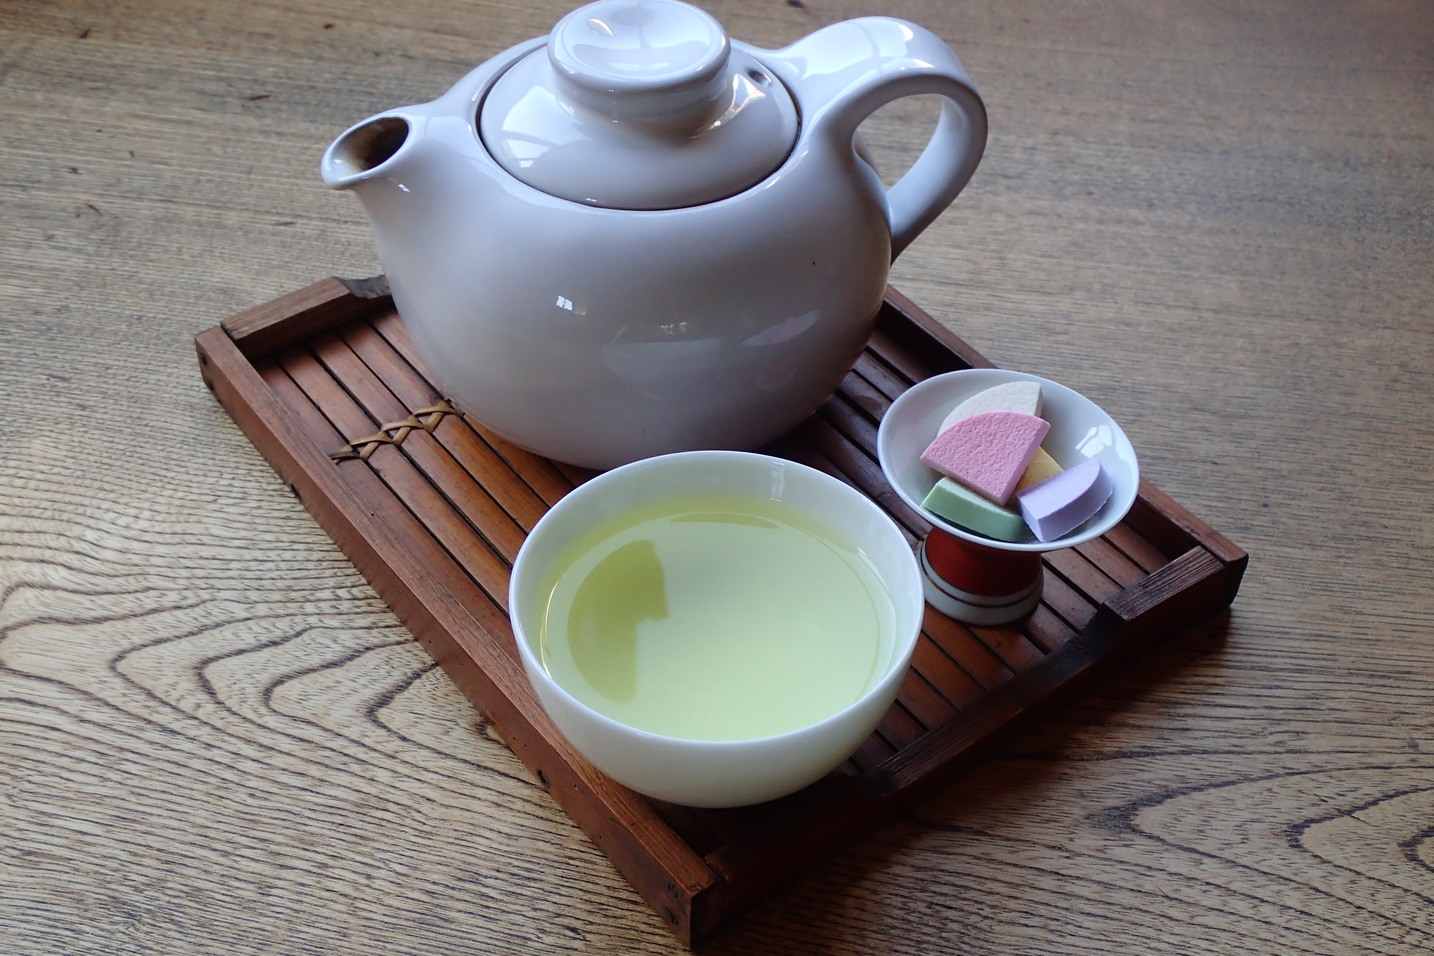 【煎茶】京都のお茶の産地である「和束町」から、オーガニック茶葉を取り寄せています。